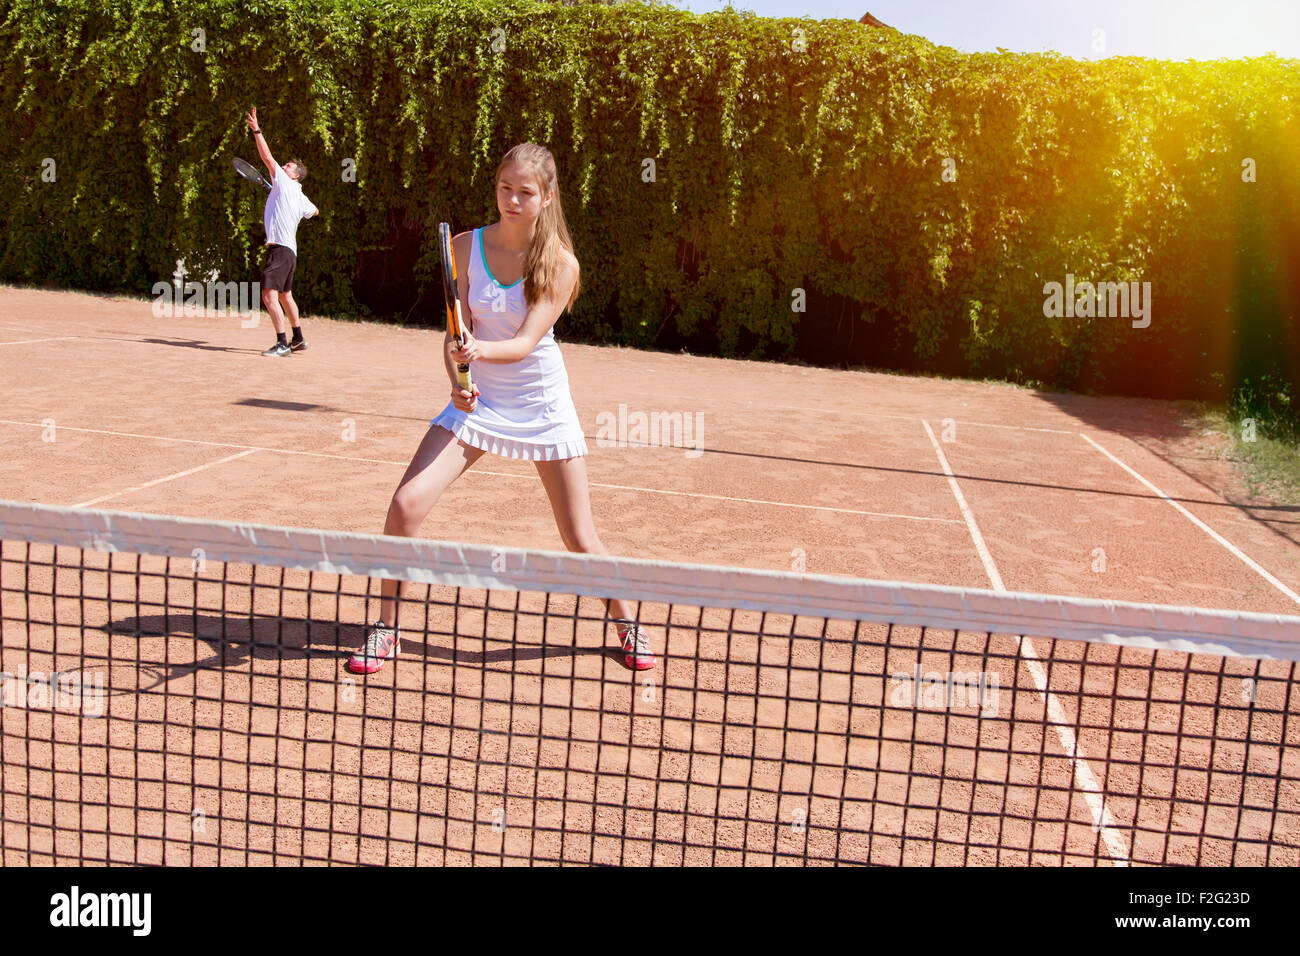 Two athletes on tennis court Stock Photo